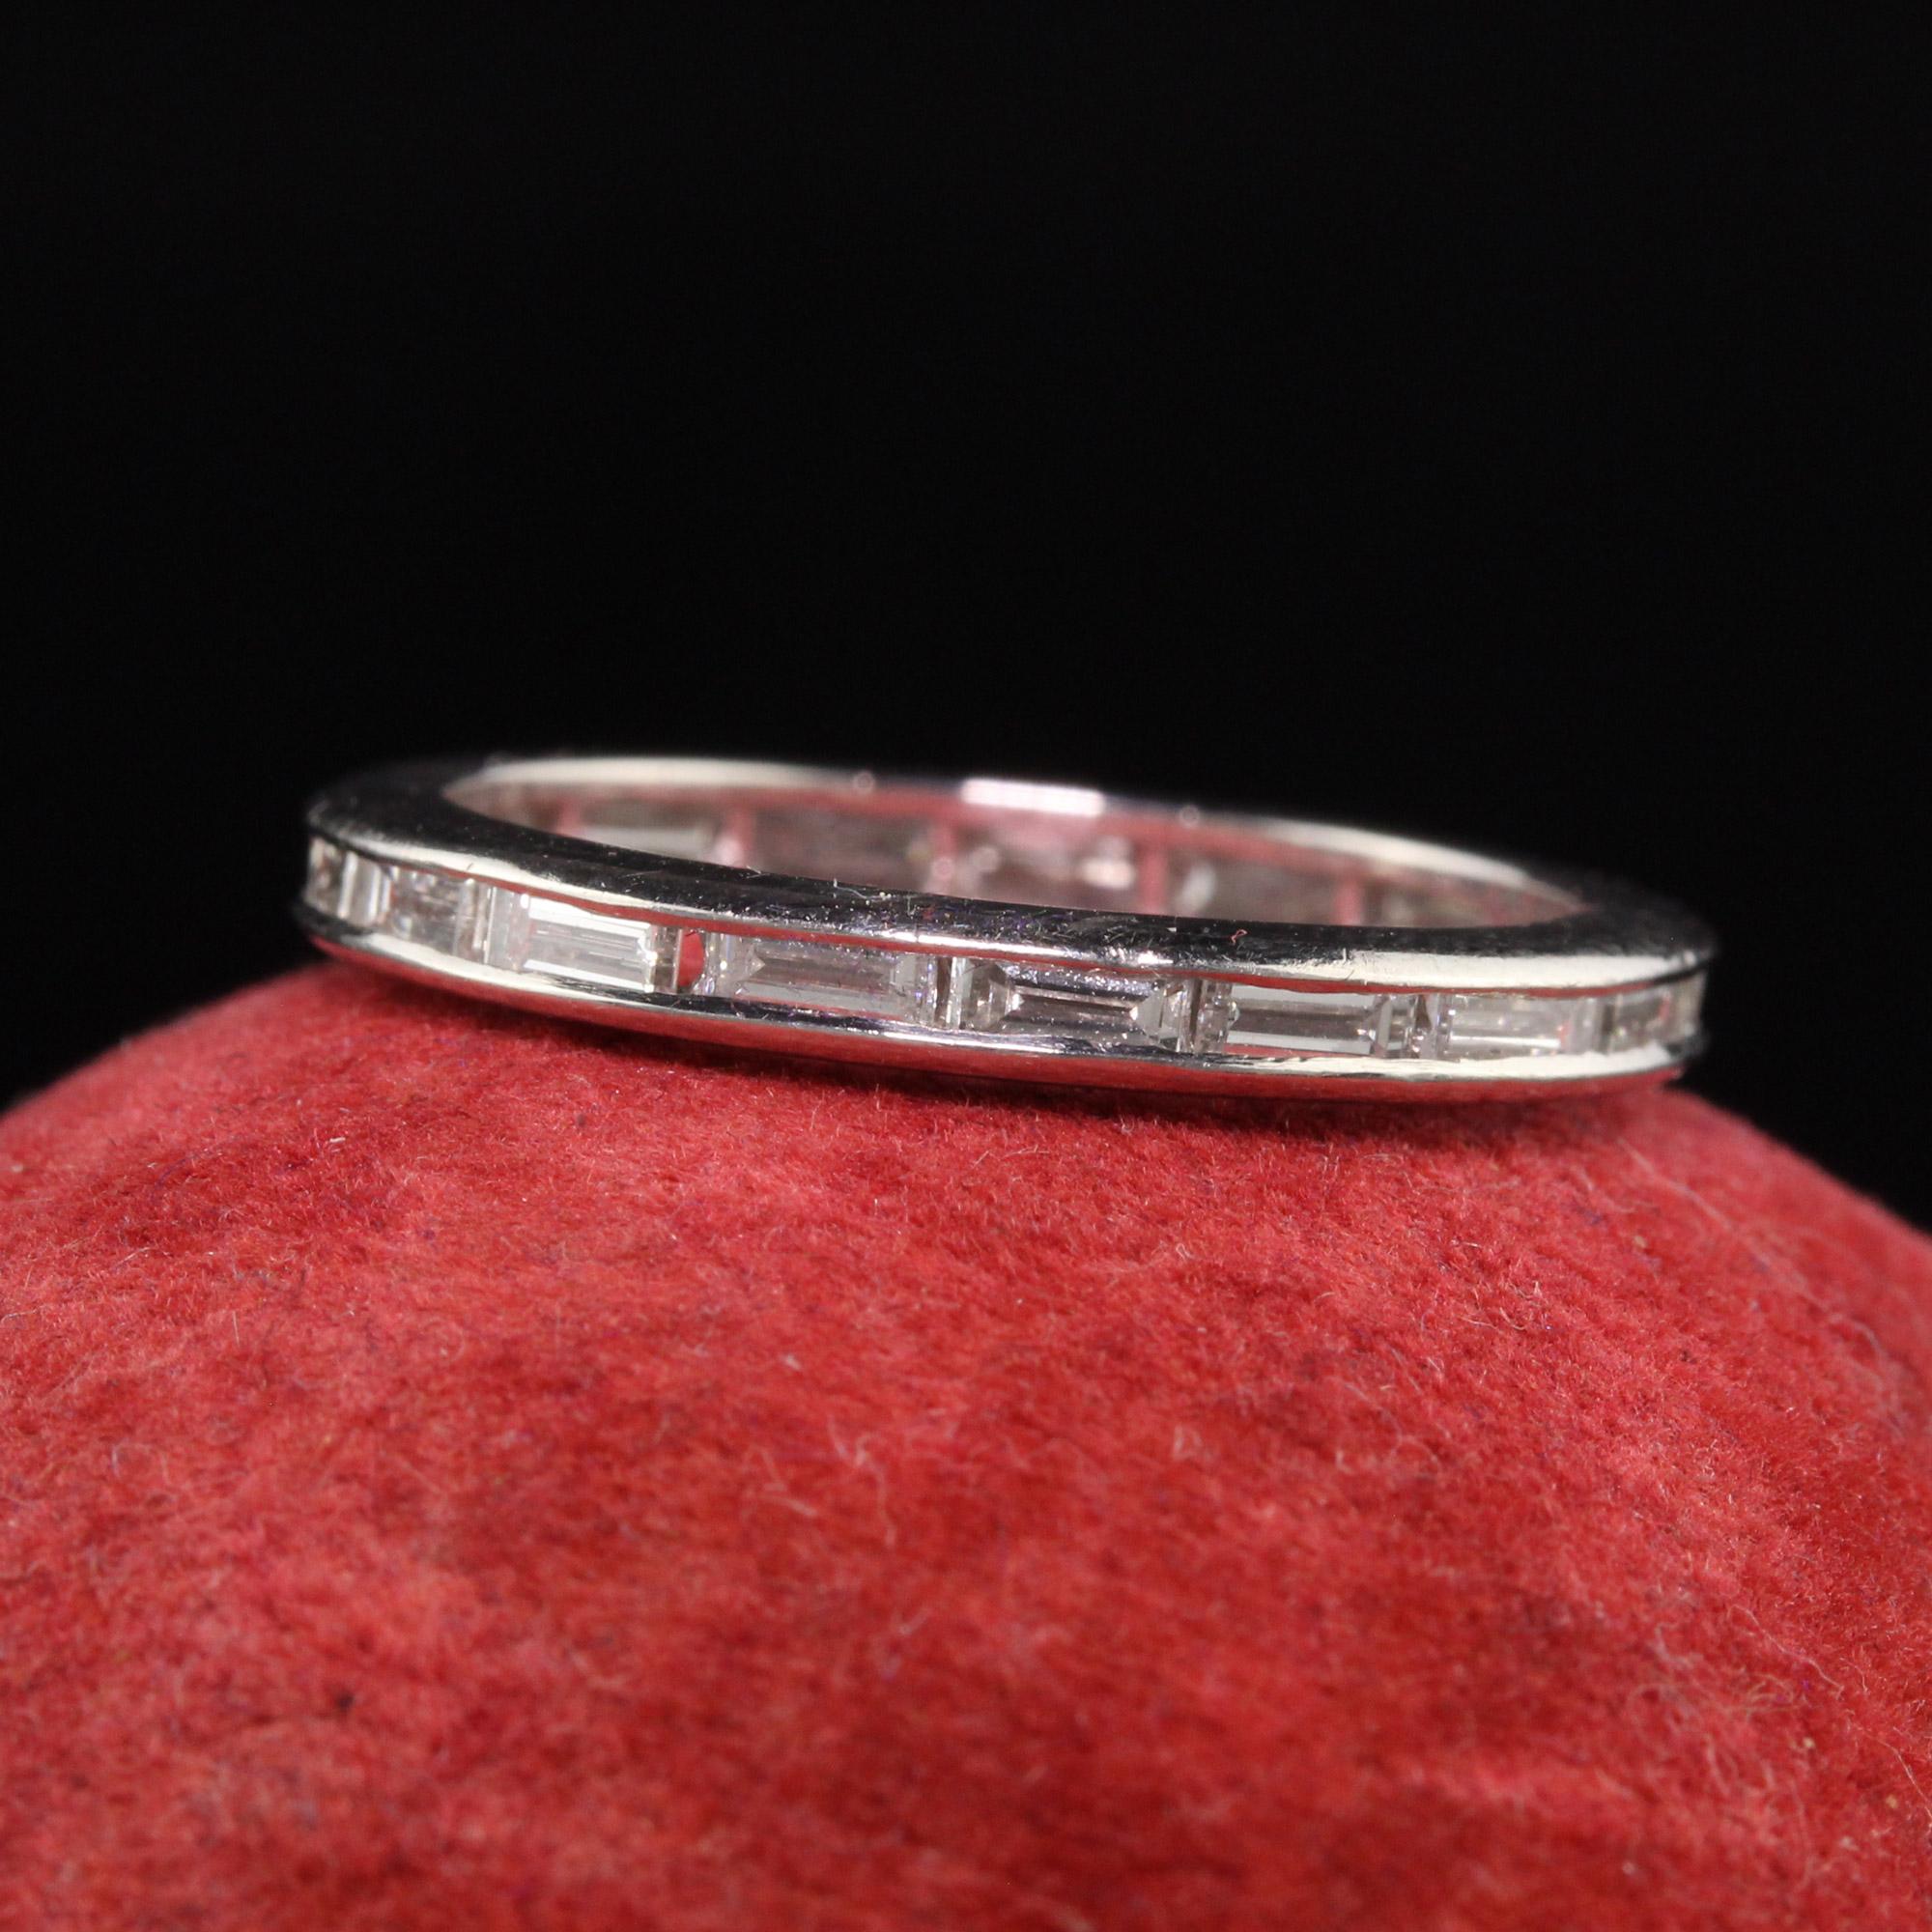 Magnifique bracelet éternité rétro en platine avec diamants baguettes. Ce magnifique anneau d'éternité est fabriqué en platine et comporte des diamants baguettes tout autour de l'anneau.

Article #R1173

Métal : Platine

Poids : 3 grammes

Taille :